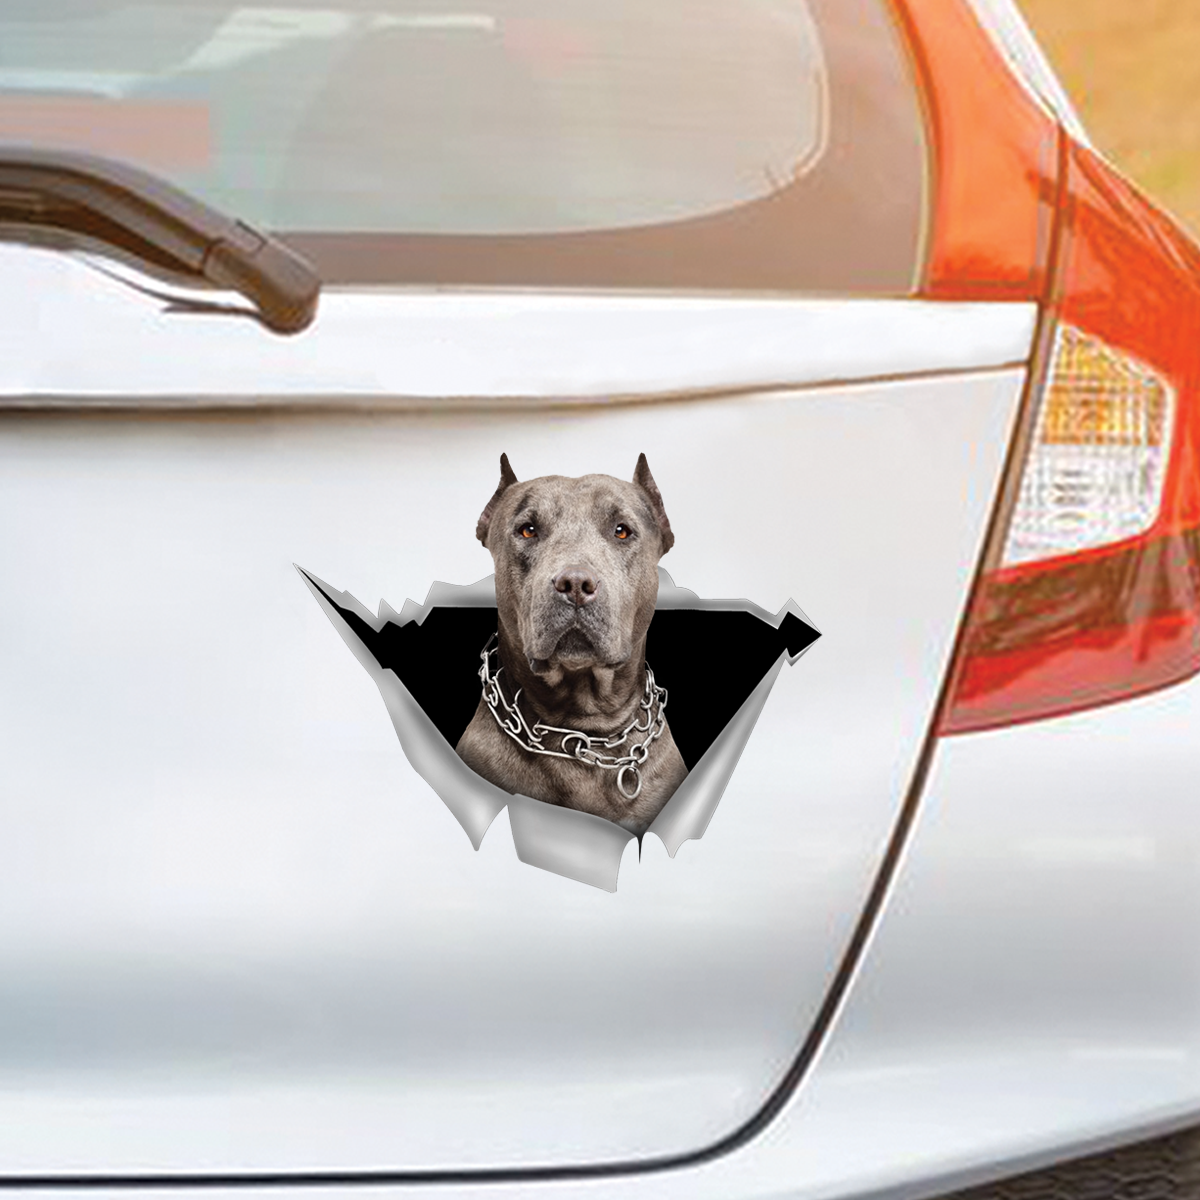 We Like Riding In Cars - American Pit Bull Terrier Car/ Door/ Fridge/ Laptop Sticker V5